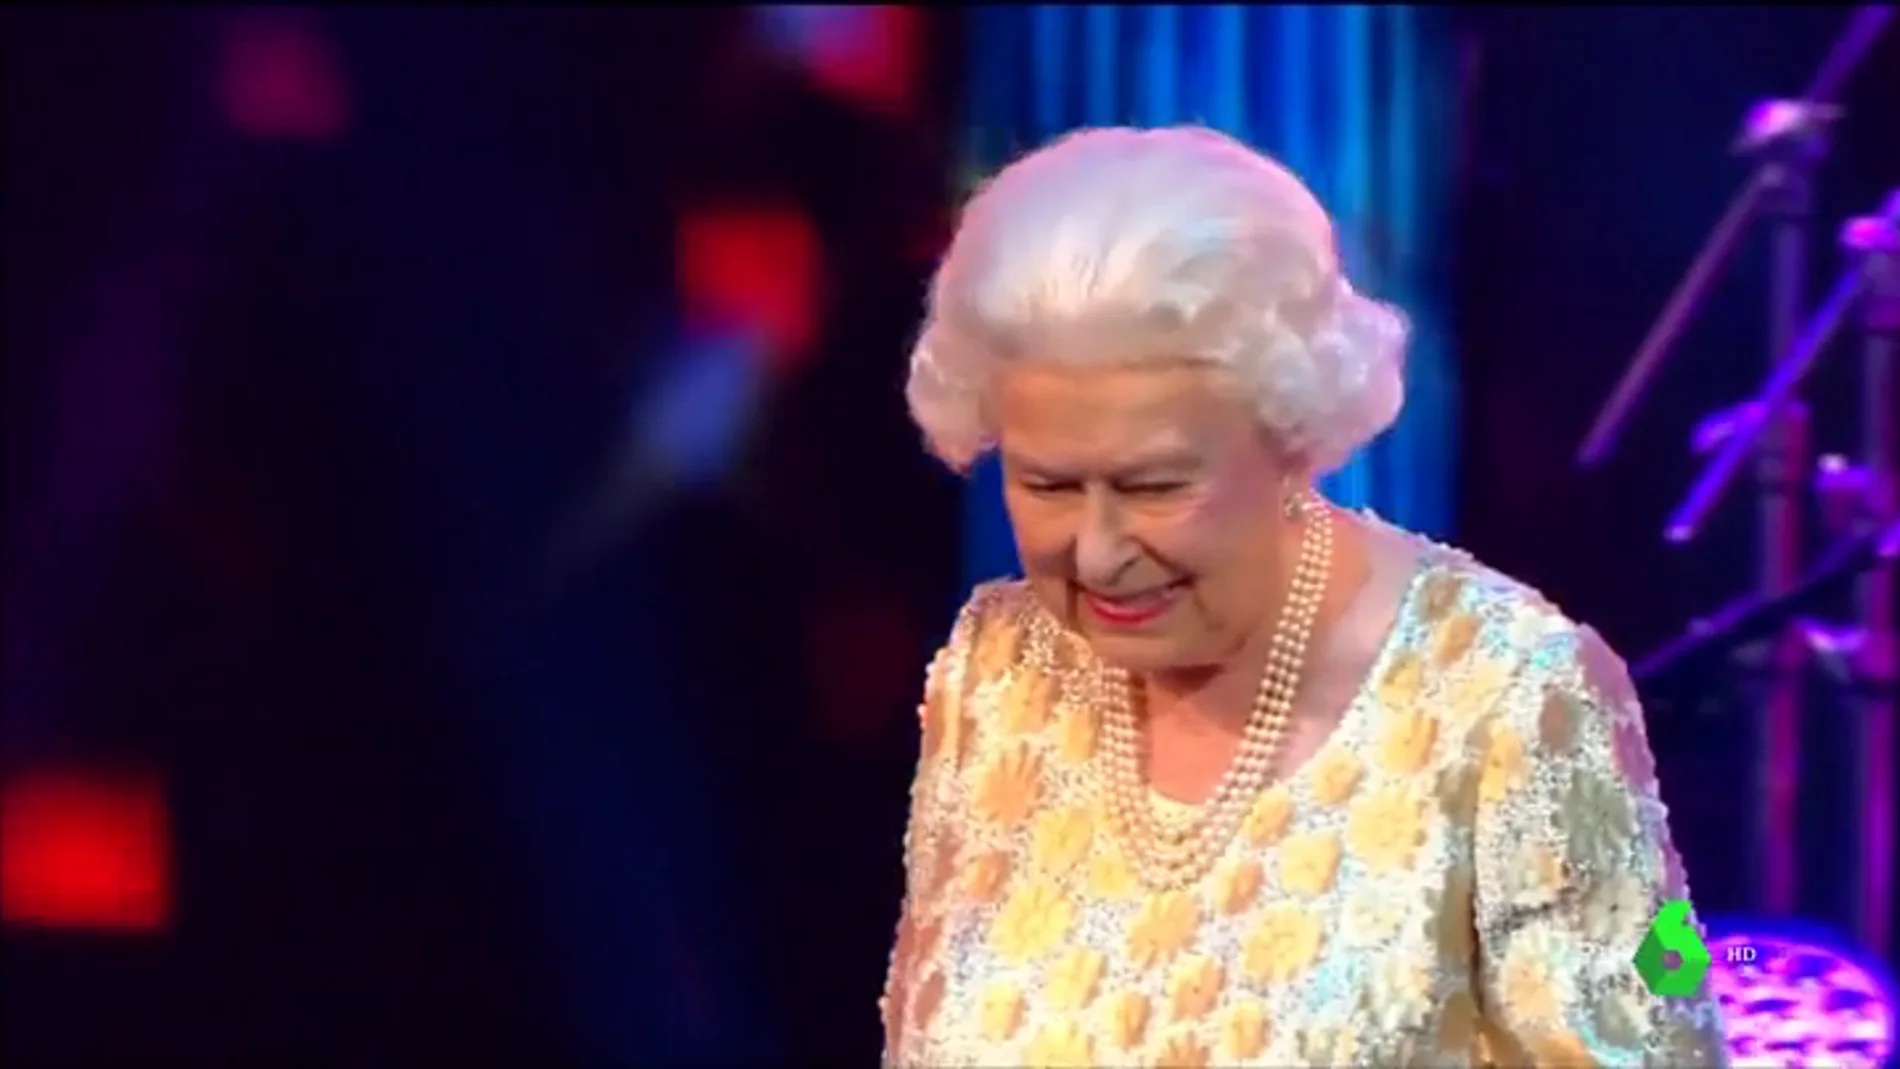 La reina Isabel II celebra su 92 cumpleaños con un concierto en el Royal Albert Hall